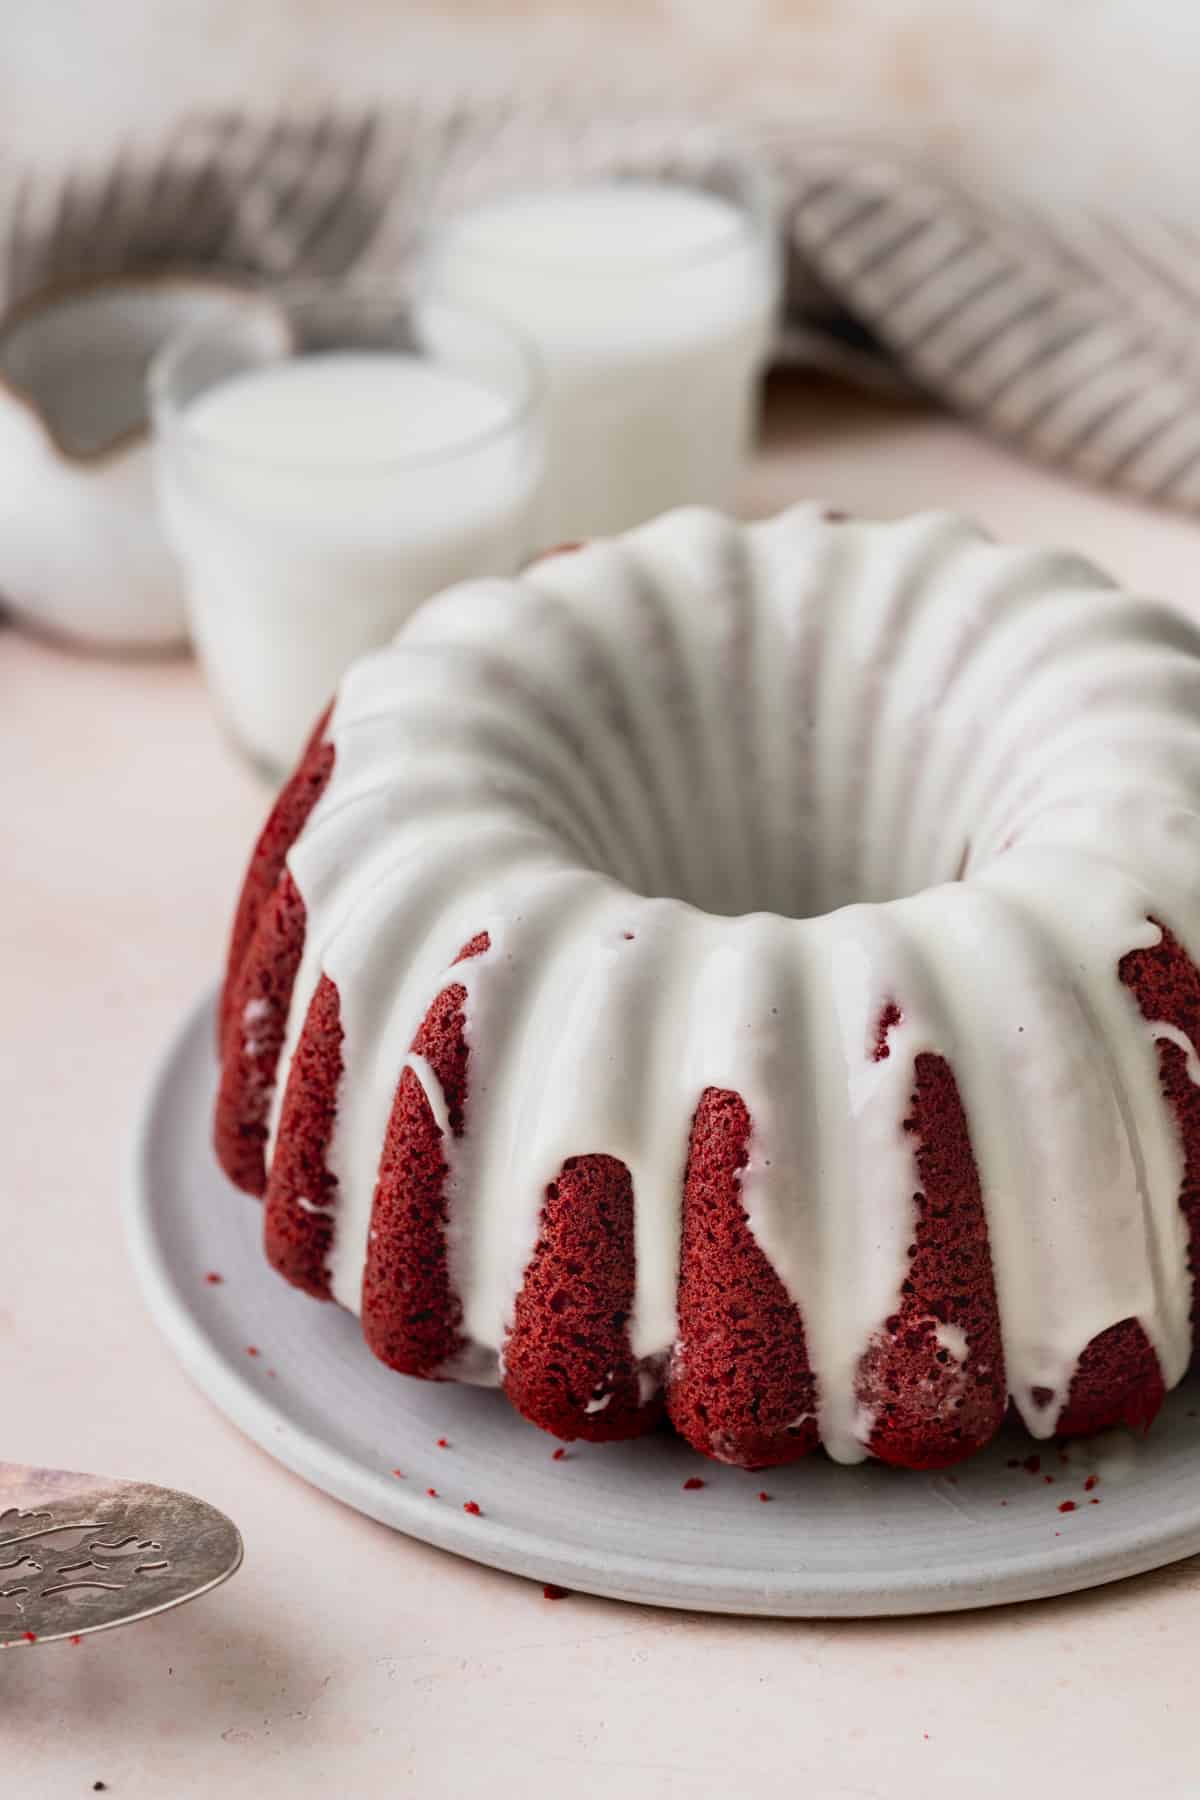 Red velvet bundt cake on a platter.